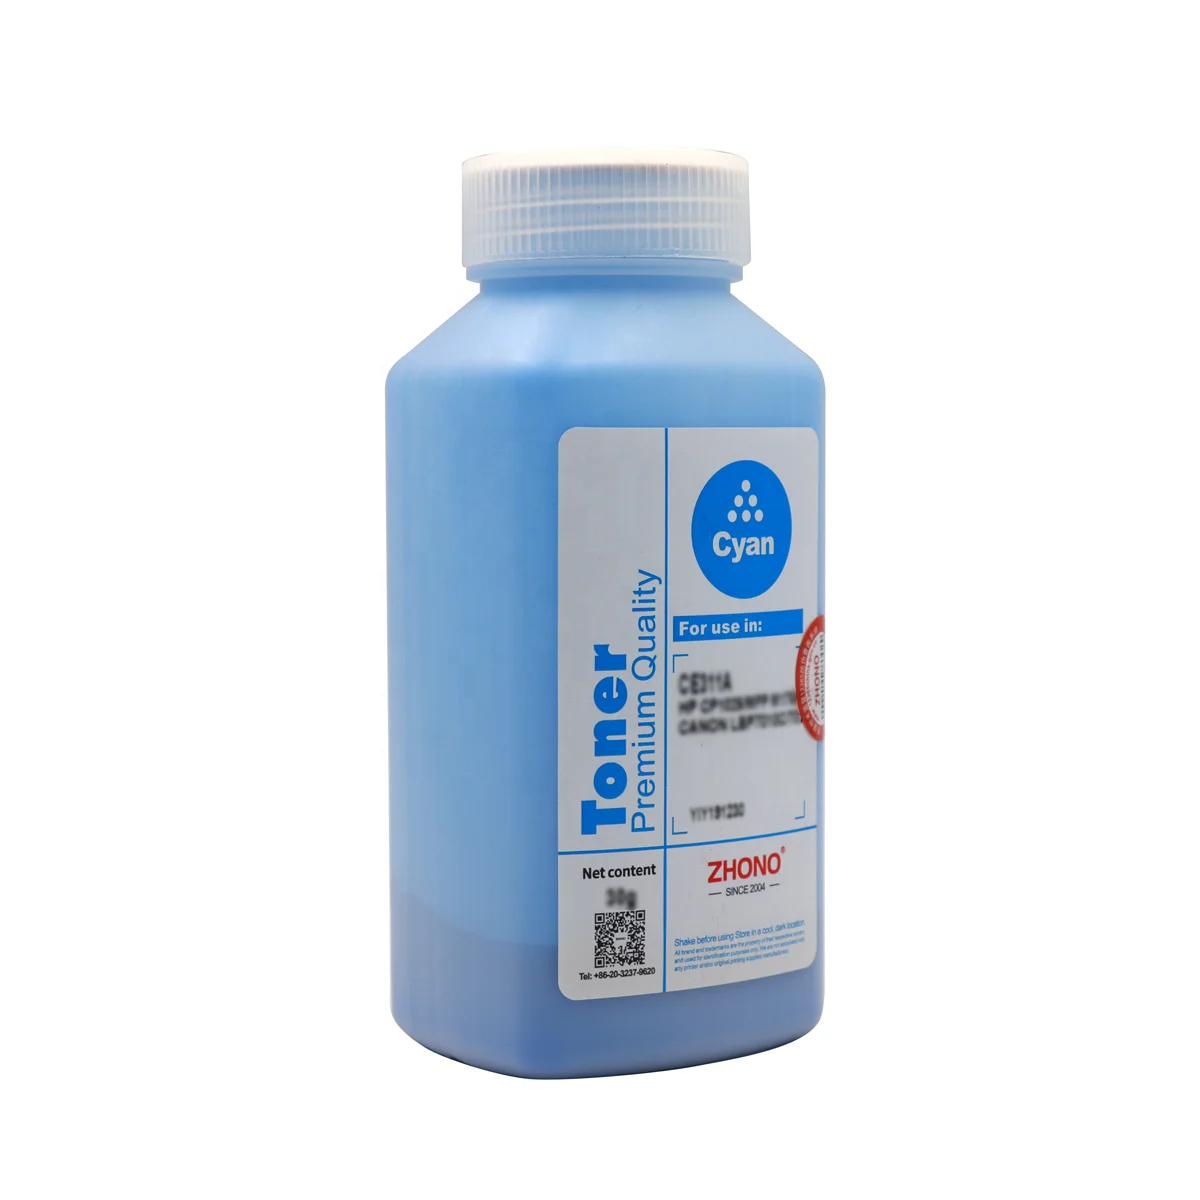 Premium Toner Refill Powder for Konica Minolta C500 8050